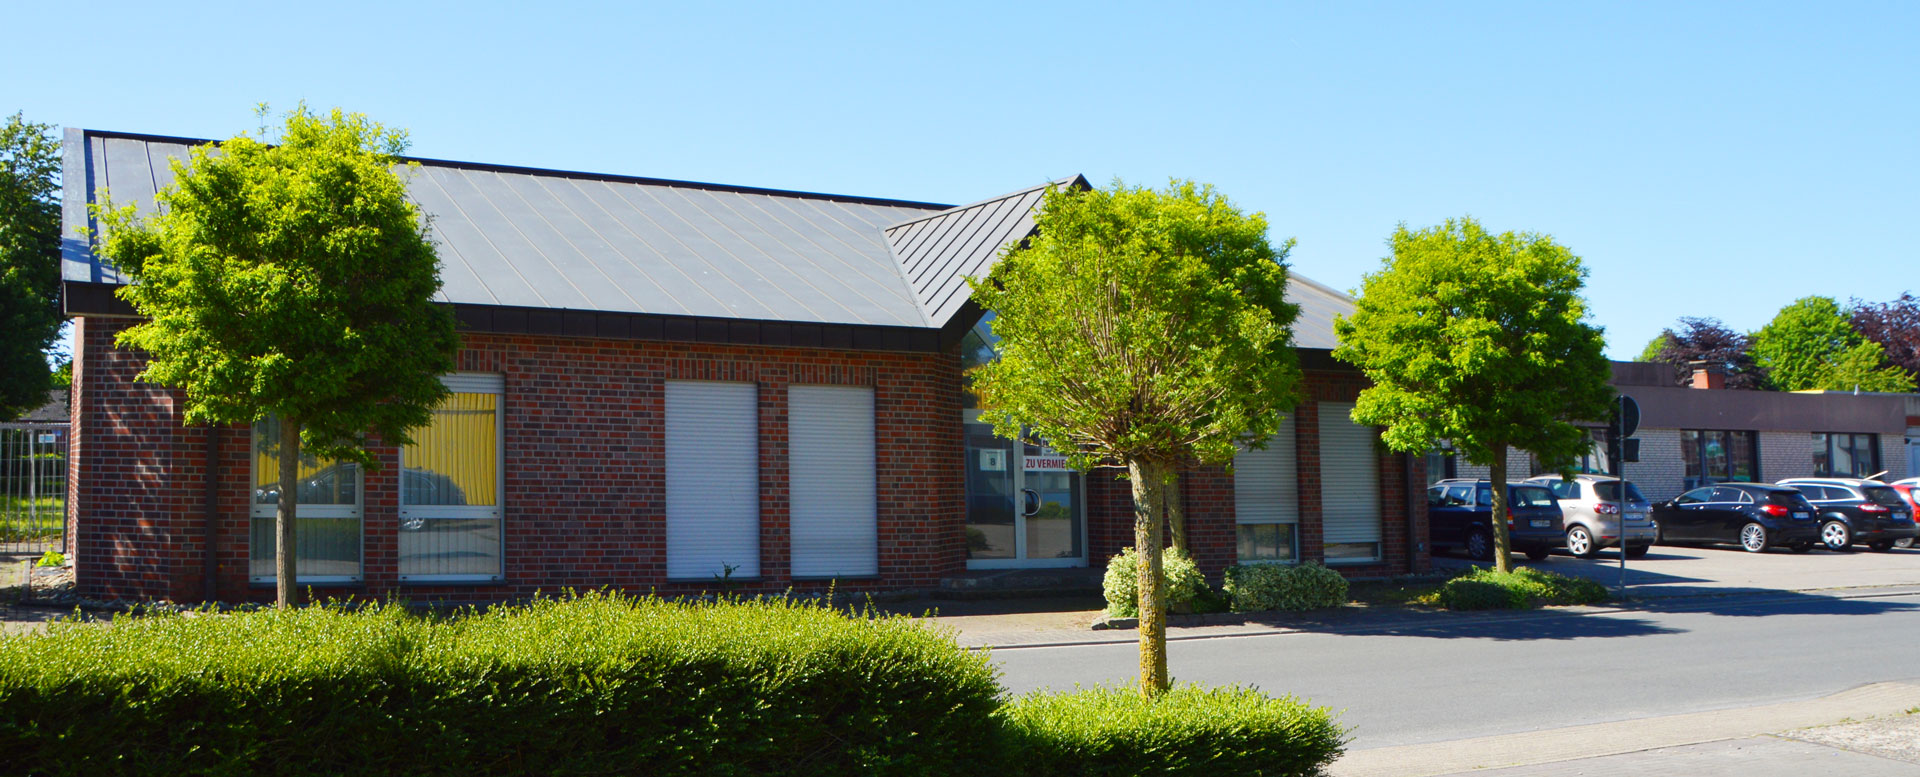 Immobilie - Büro- und Lagerflächen in Saerbeck